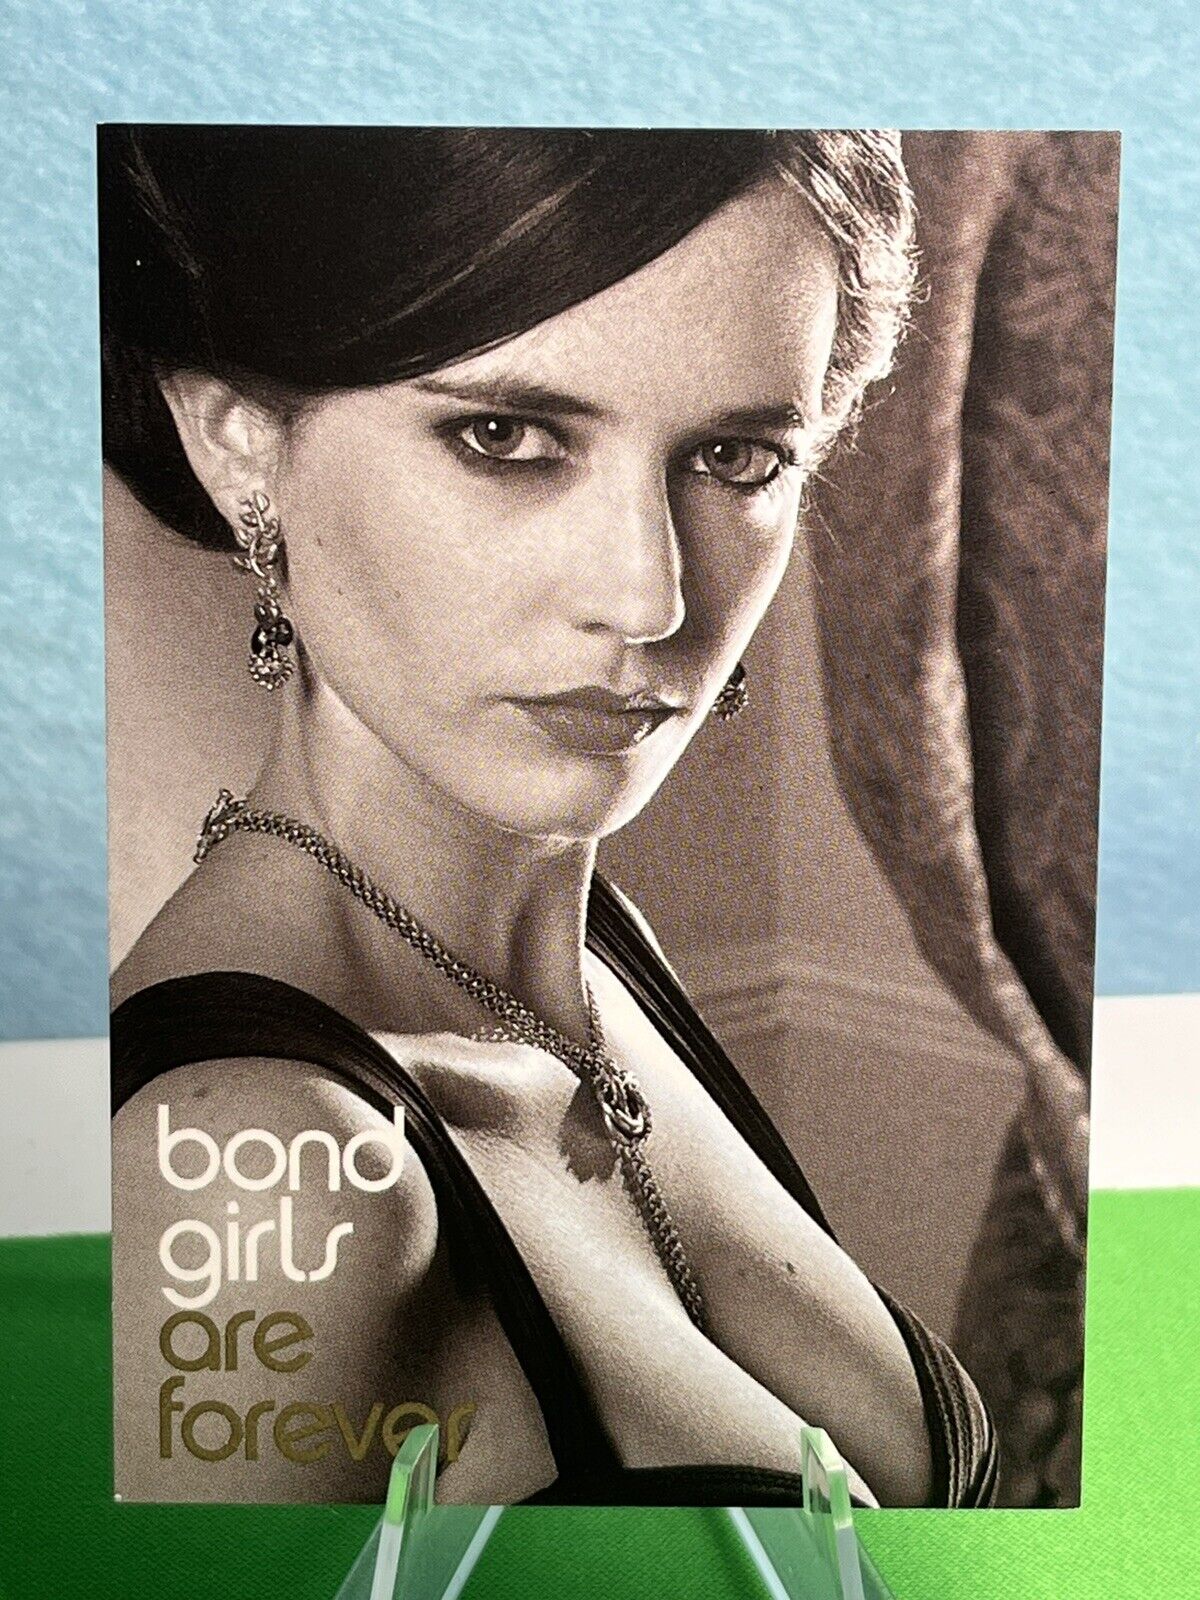 Rittenhouse Women of James Bond Eva Green as Vesper Lynd Bond Girls Are Forever